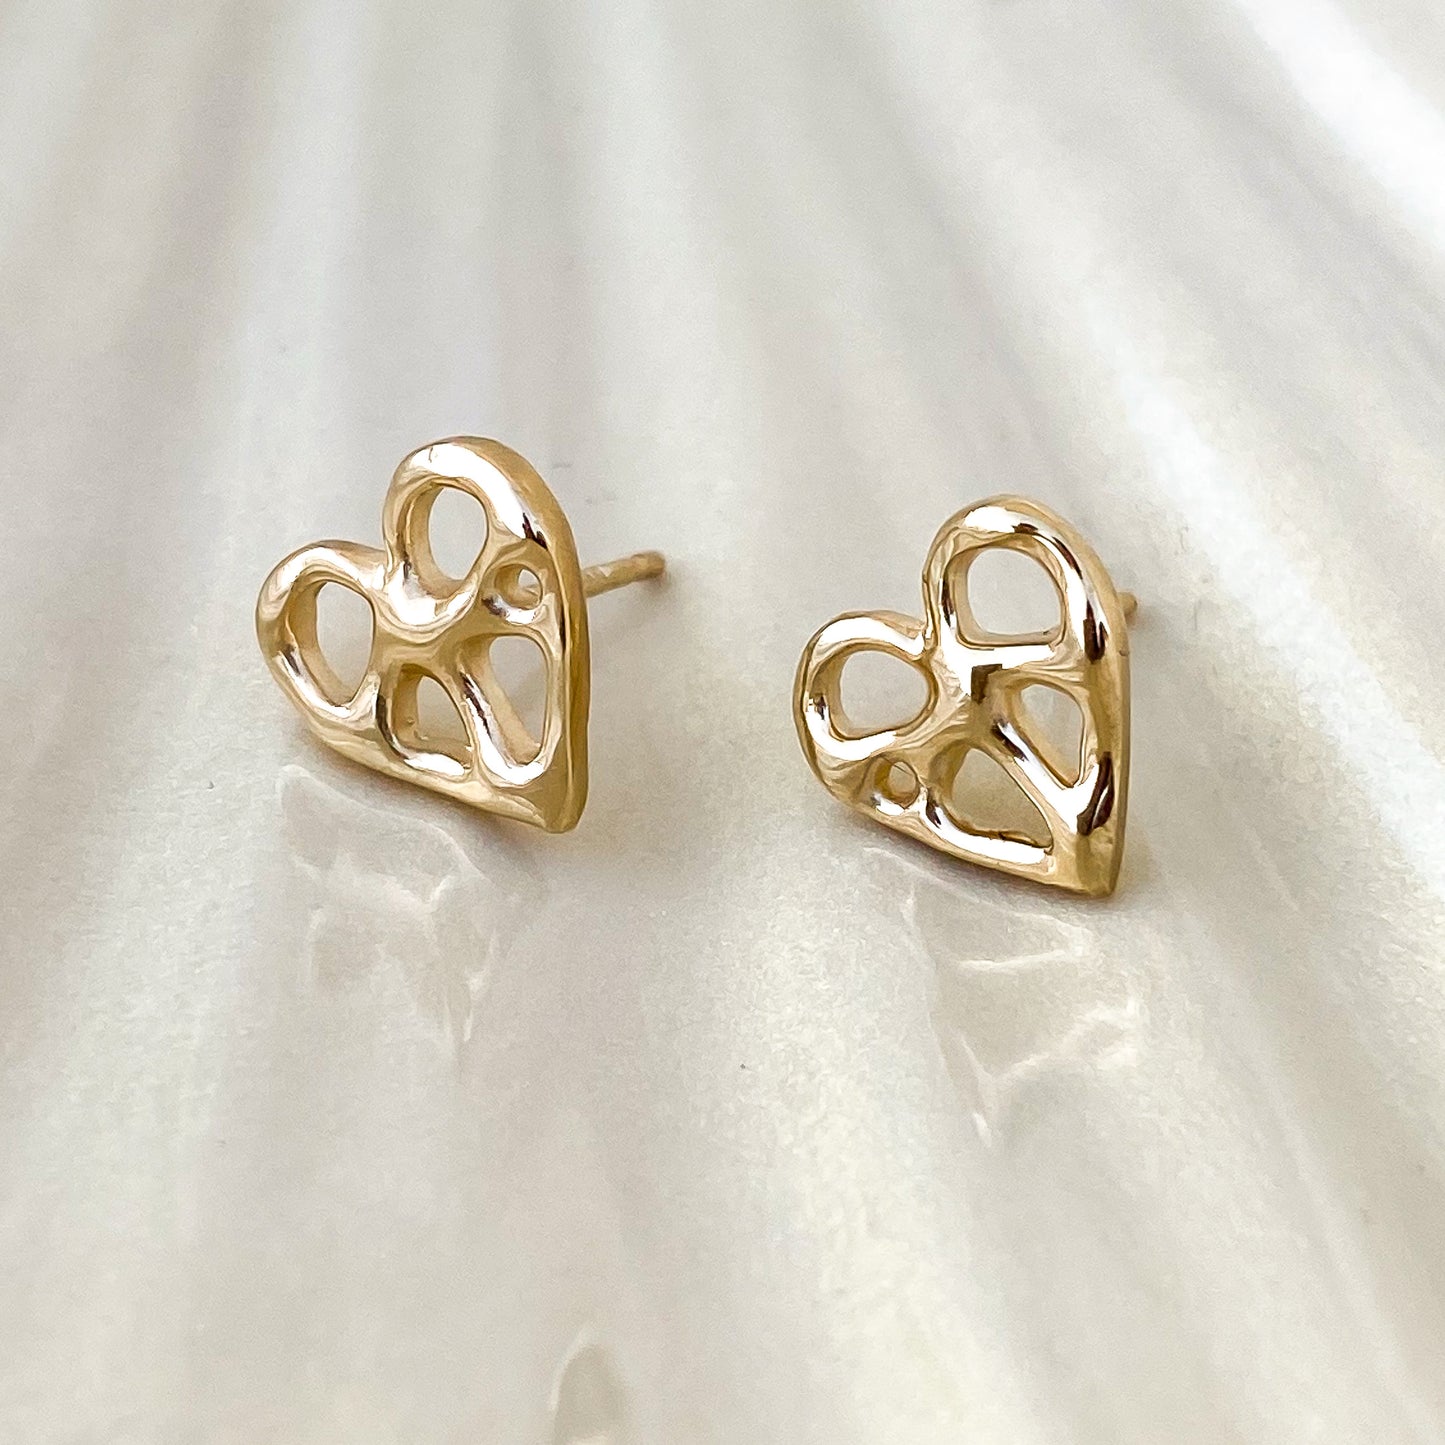 Gold Infinity Heart Stud Earrings